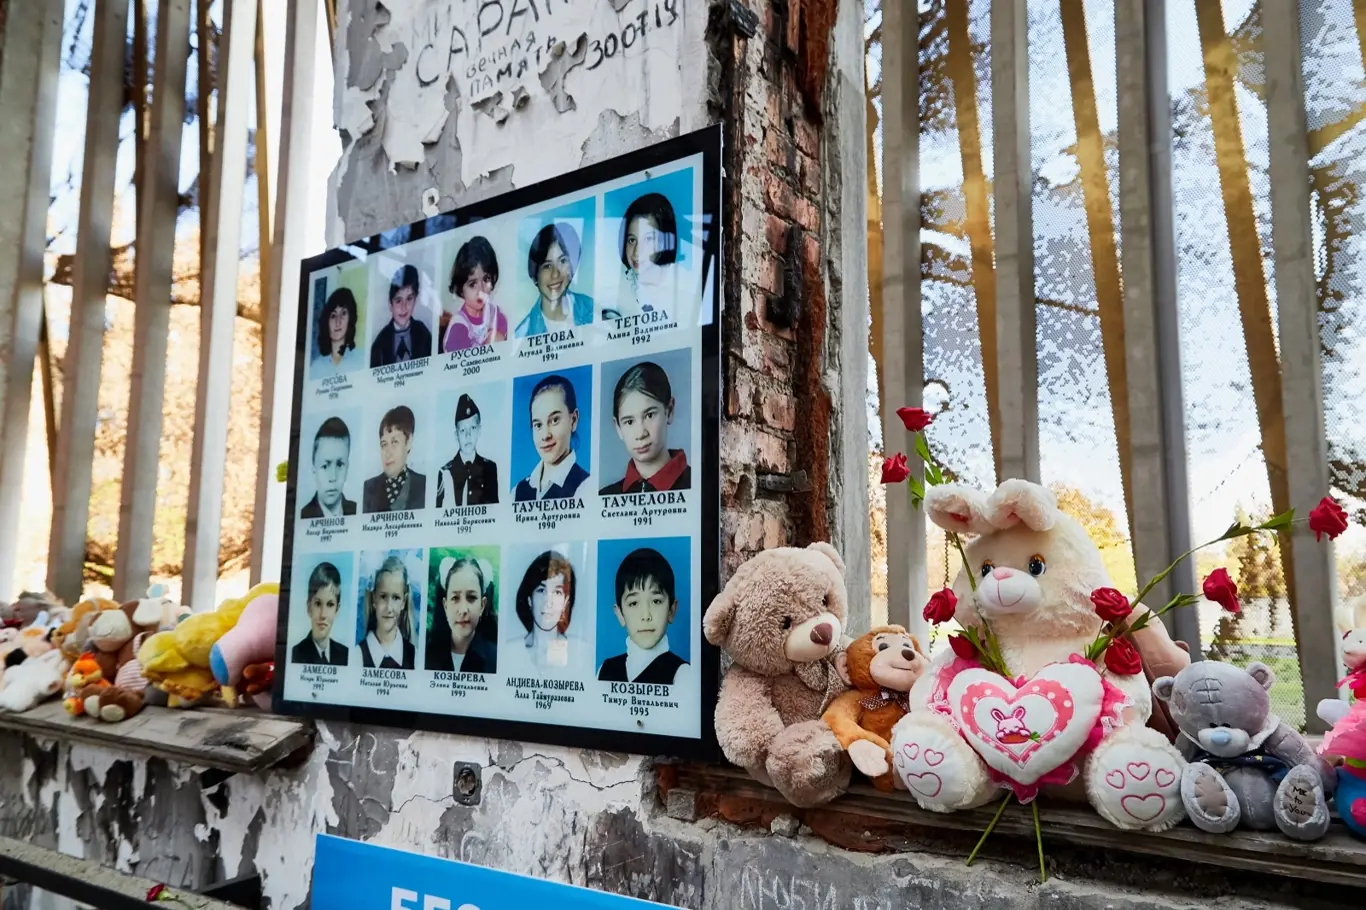 Beslanský masakr se nesmazatelně zapsal do dějin. Na první den školy před 17 lety nebude nikdy zapomenuto.